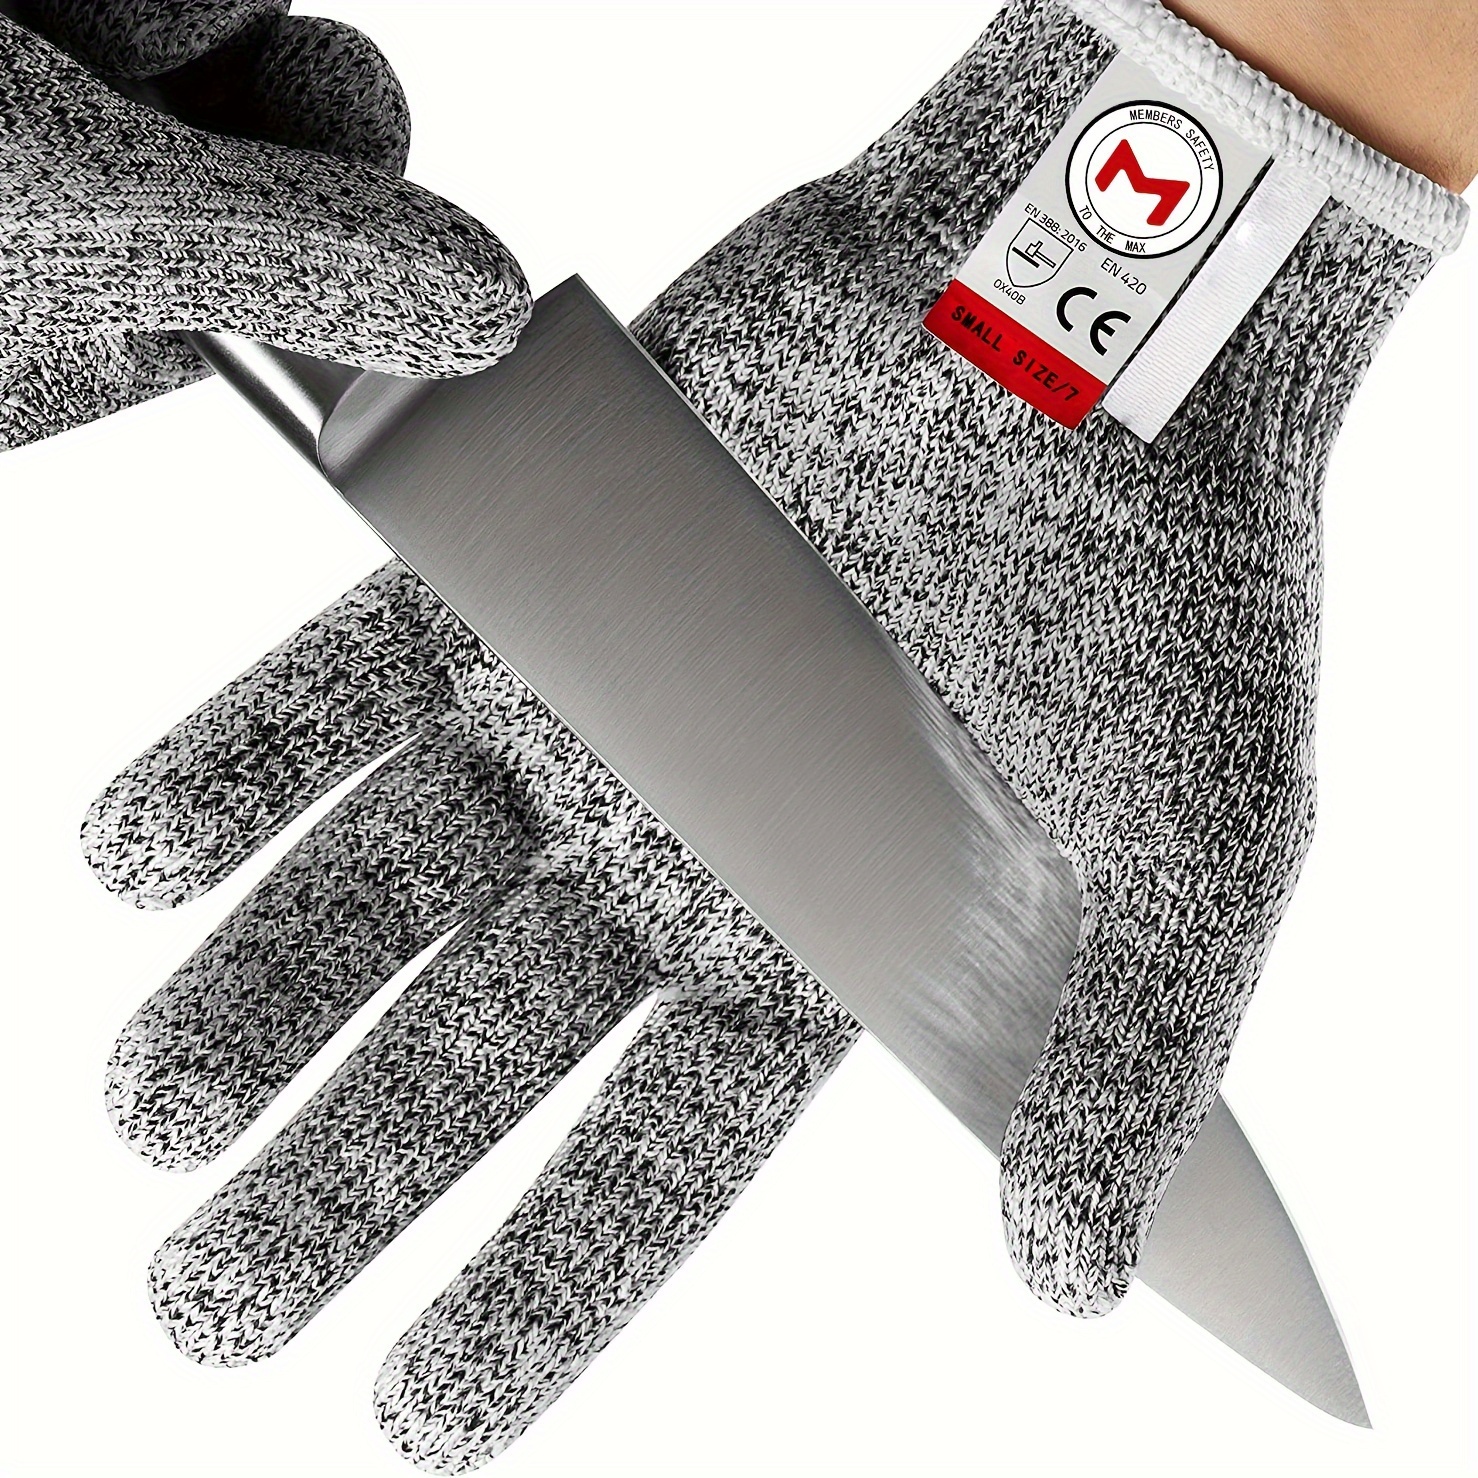 Price-Wise Wonder Cut Resistant Work Gloves NoCrys Cut Resistant